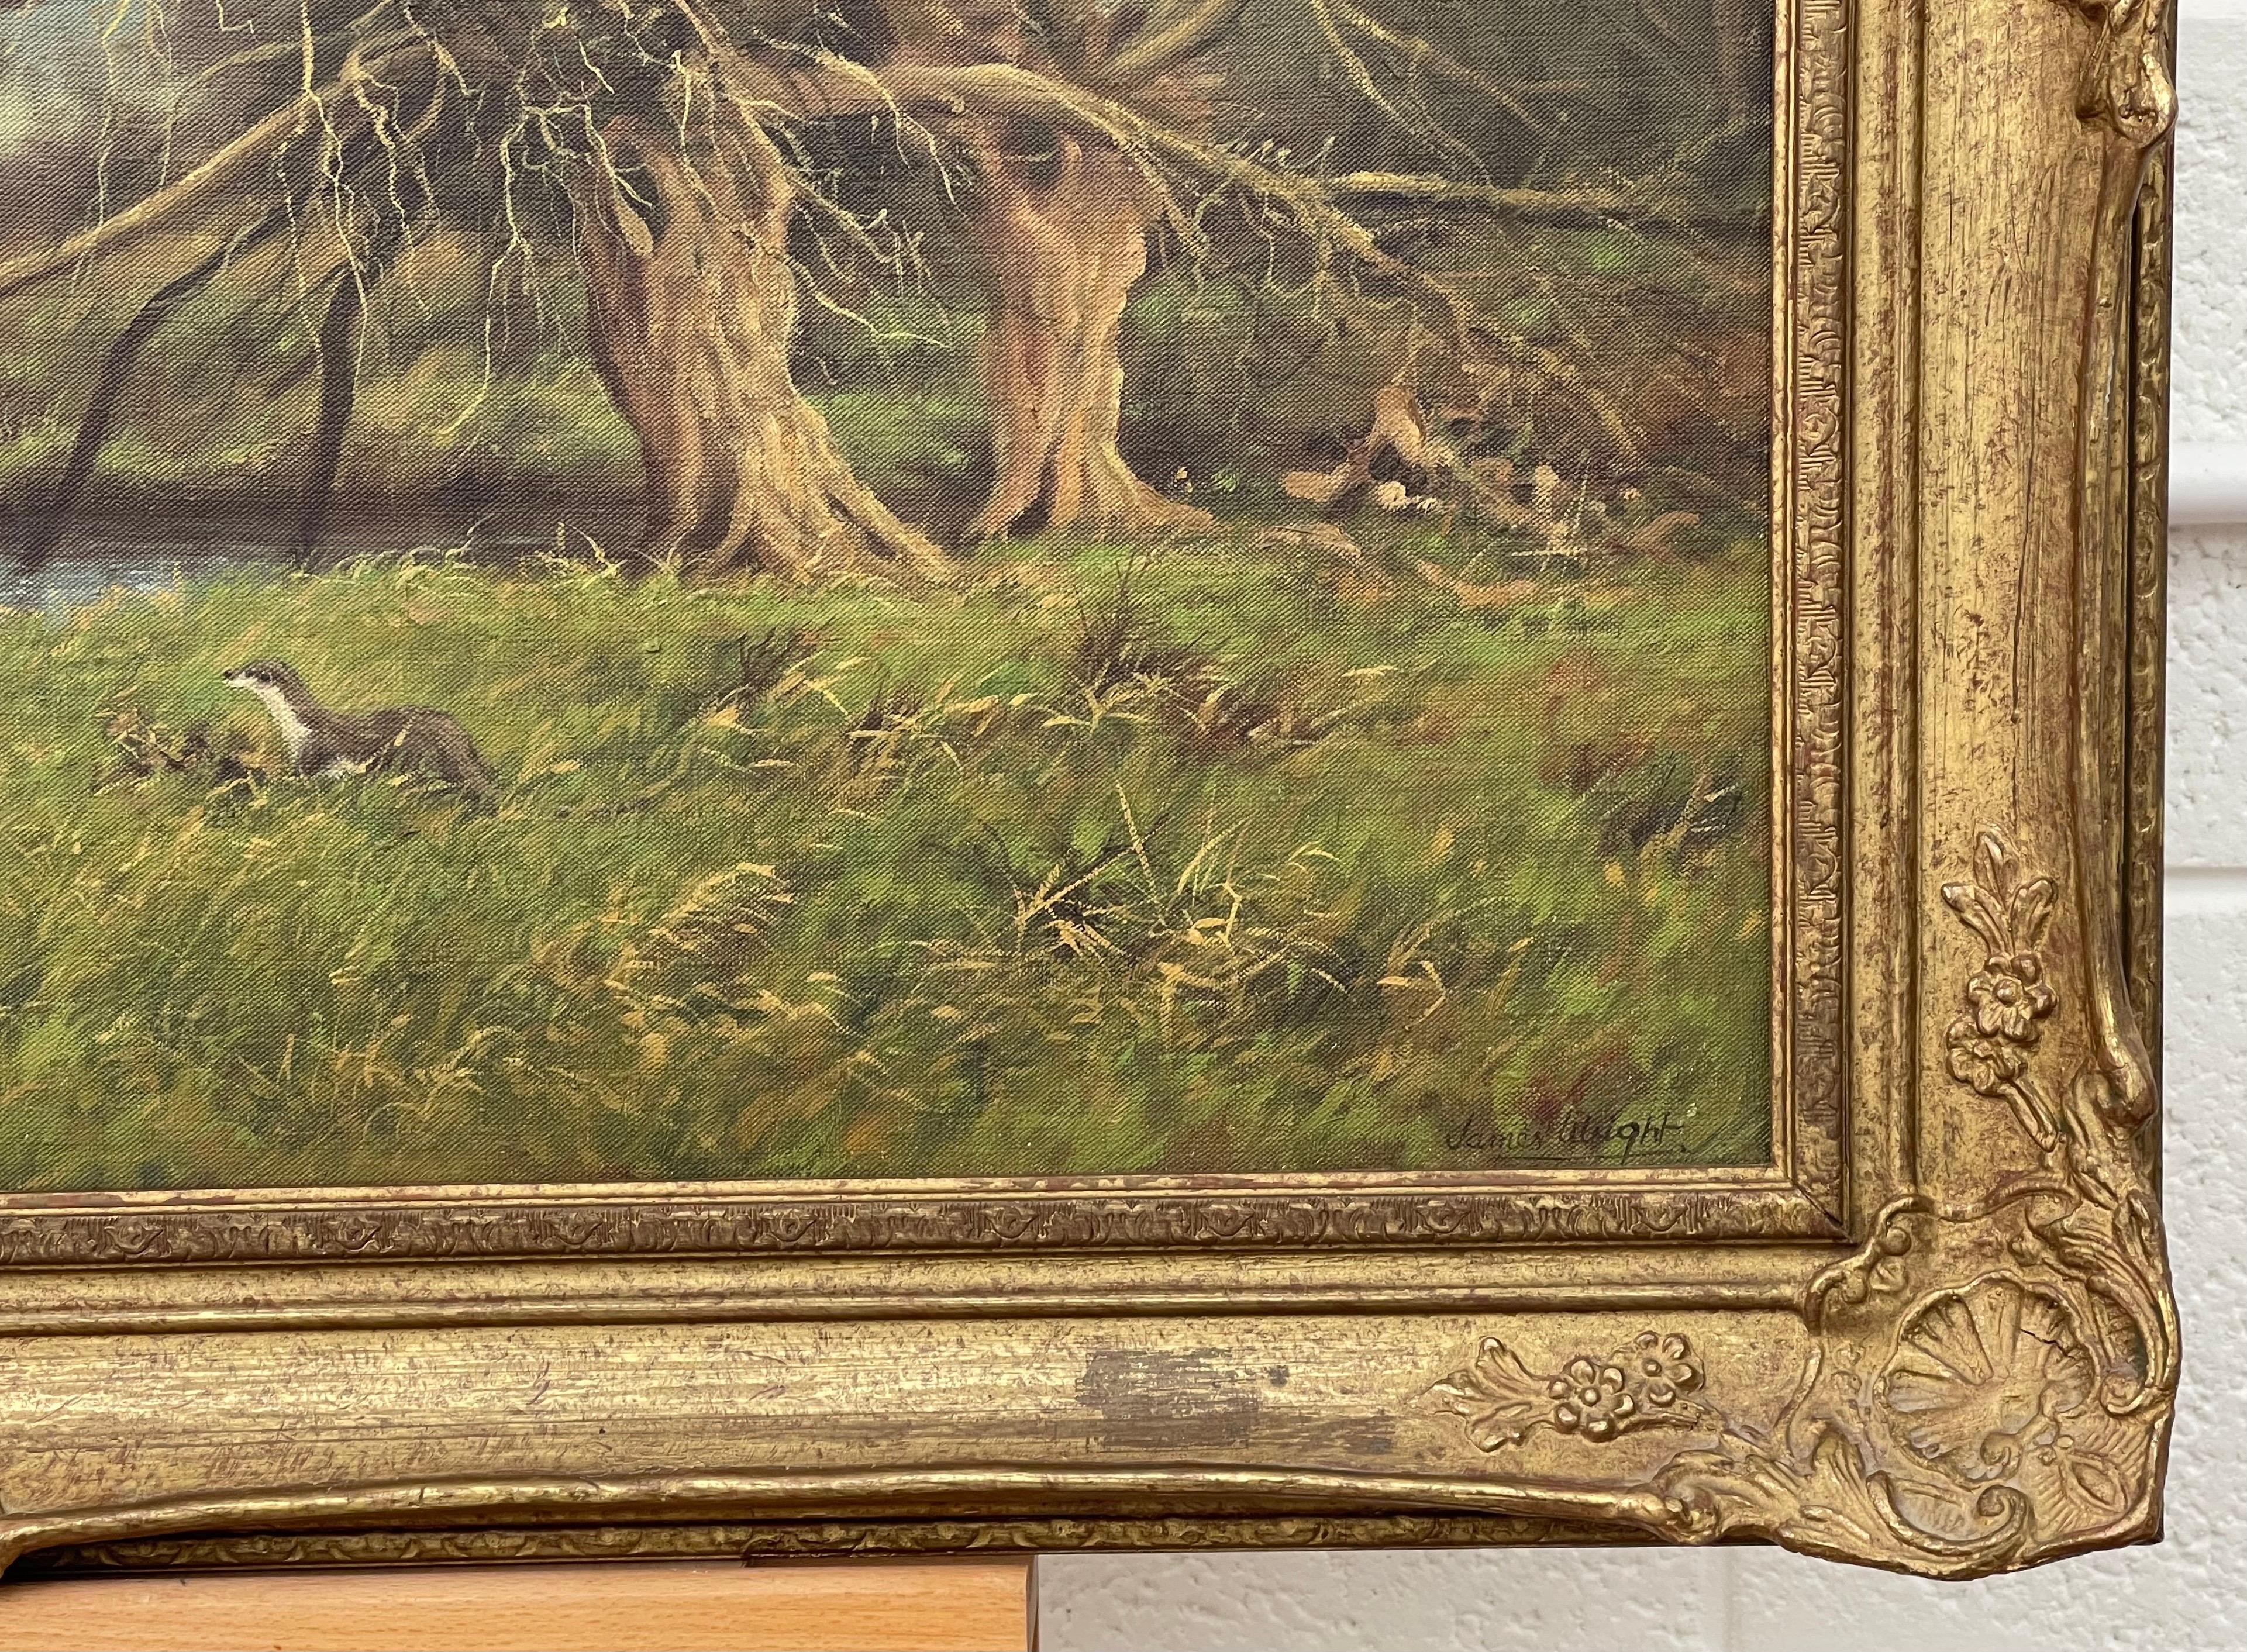 Traditionelles Ölgemälde der englischen Landschaft mit Flussottern von einem modernen britischen Künstler

Kunst misst 30 x 20 Zoll 
Rahmen misst 36 x 26 Zoll 

James Wright wurde 1935 in Peterborough geboren und lebt heute in Lincolnshire. James